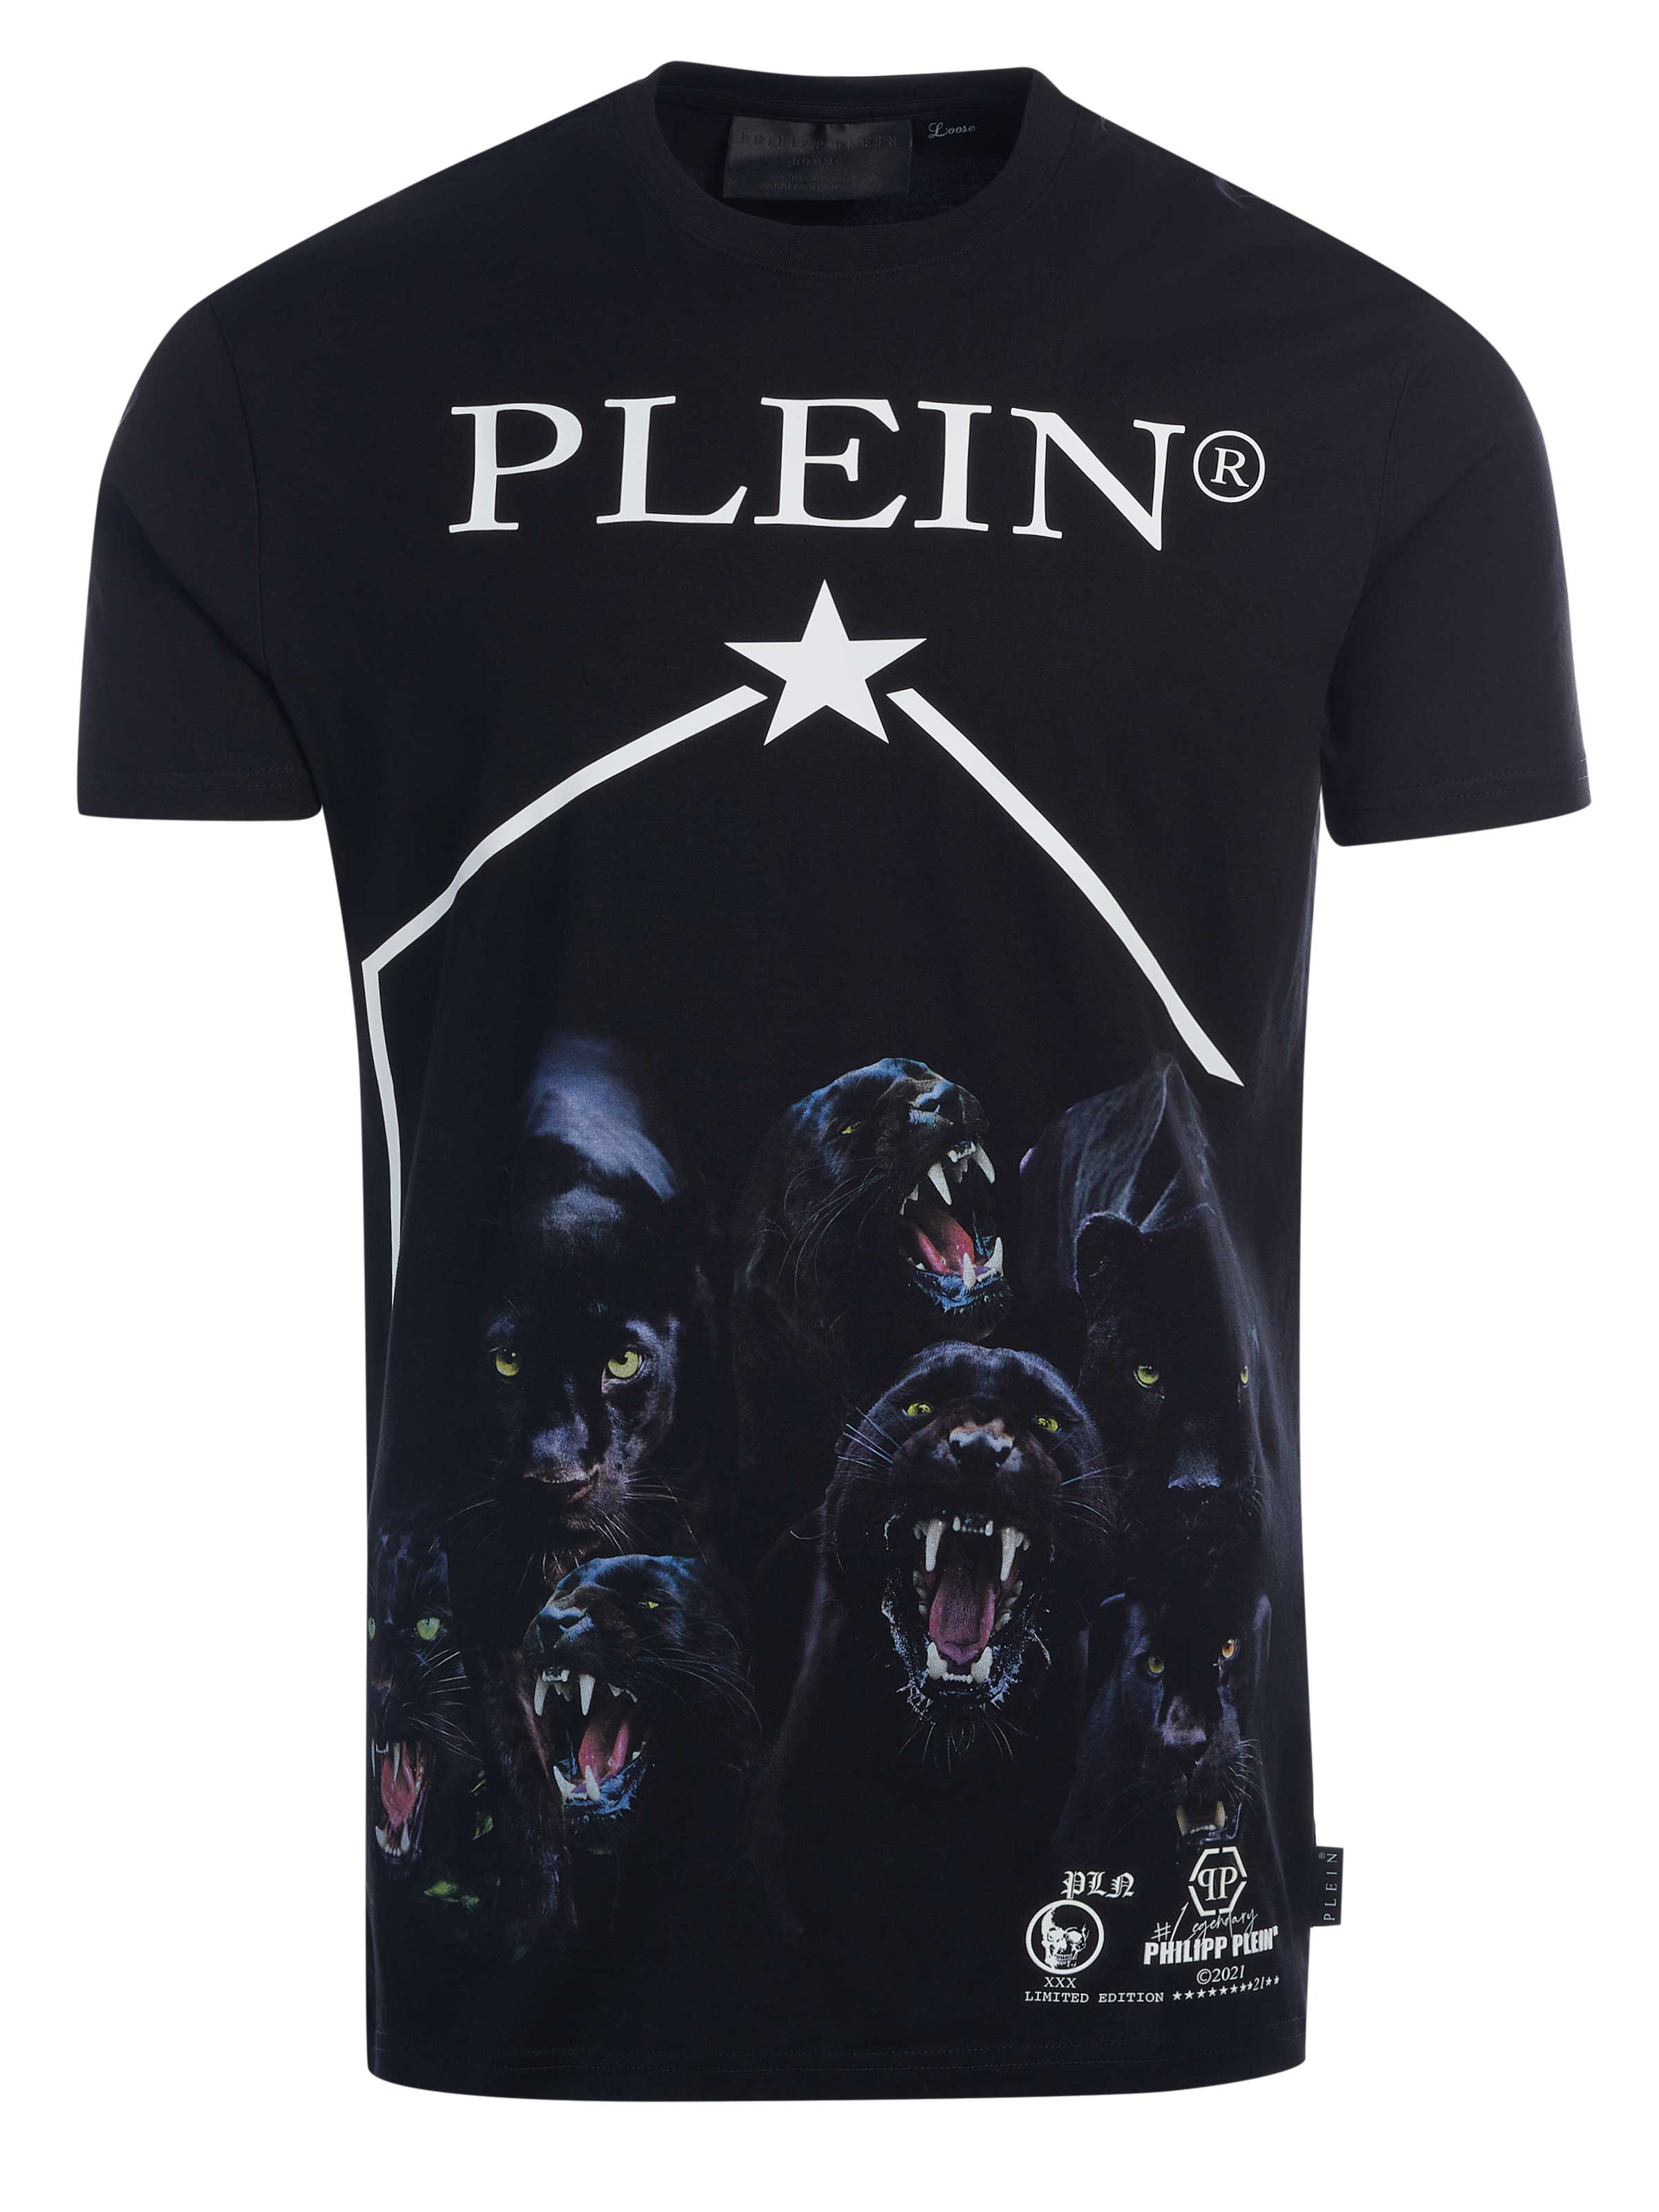 spontaan oosten uitvinden Philipp Plein T-shirt Black on SALE | Fashionesta